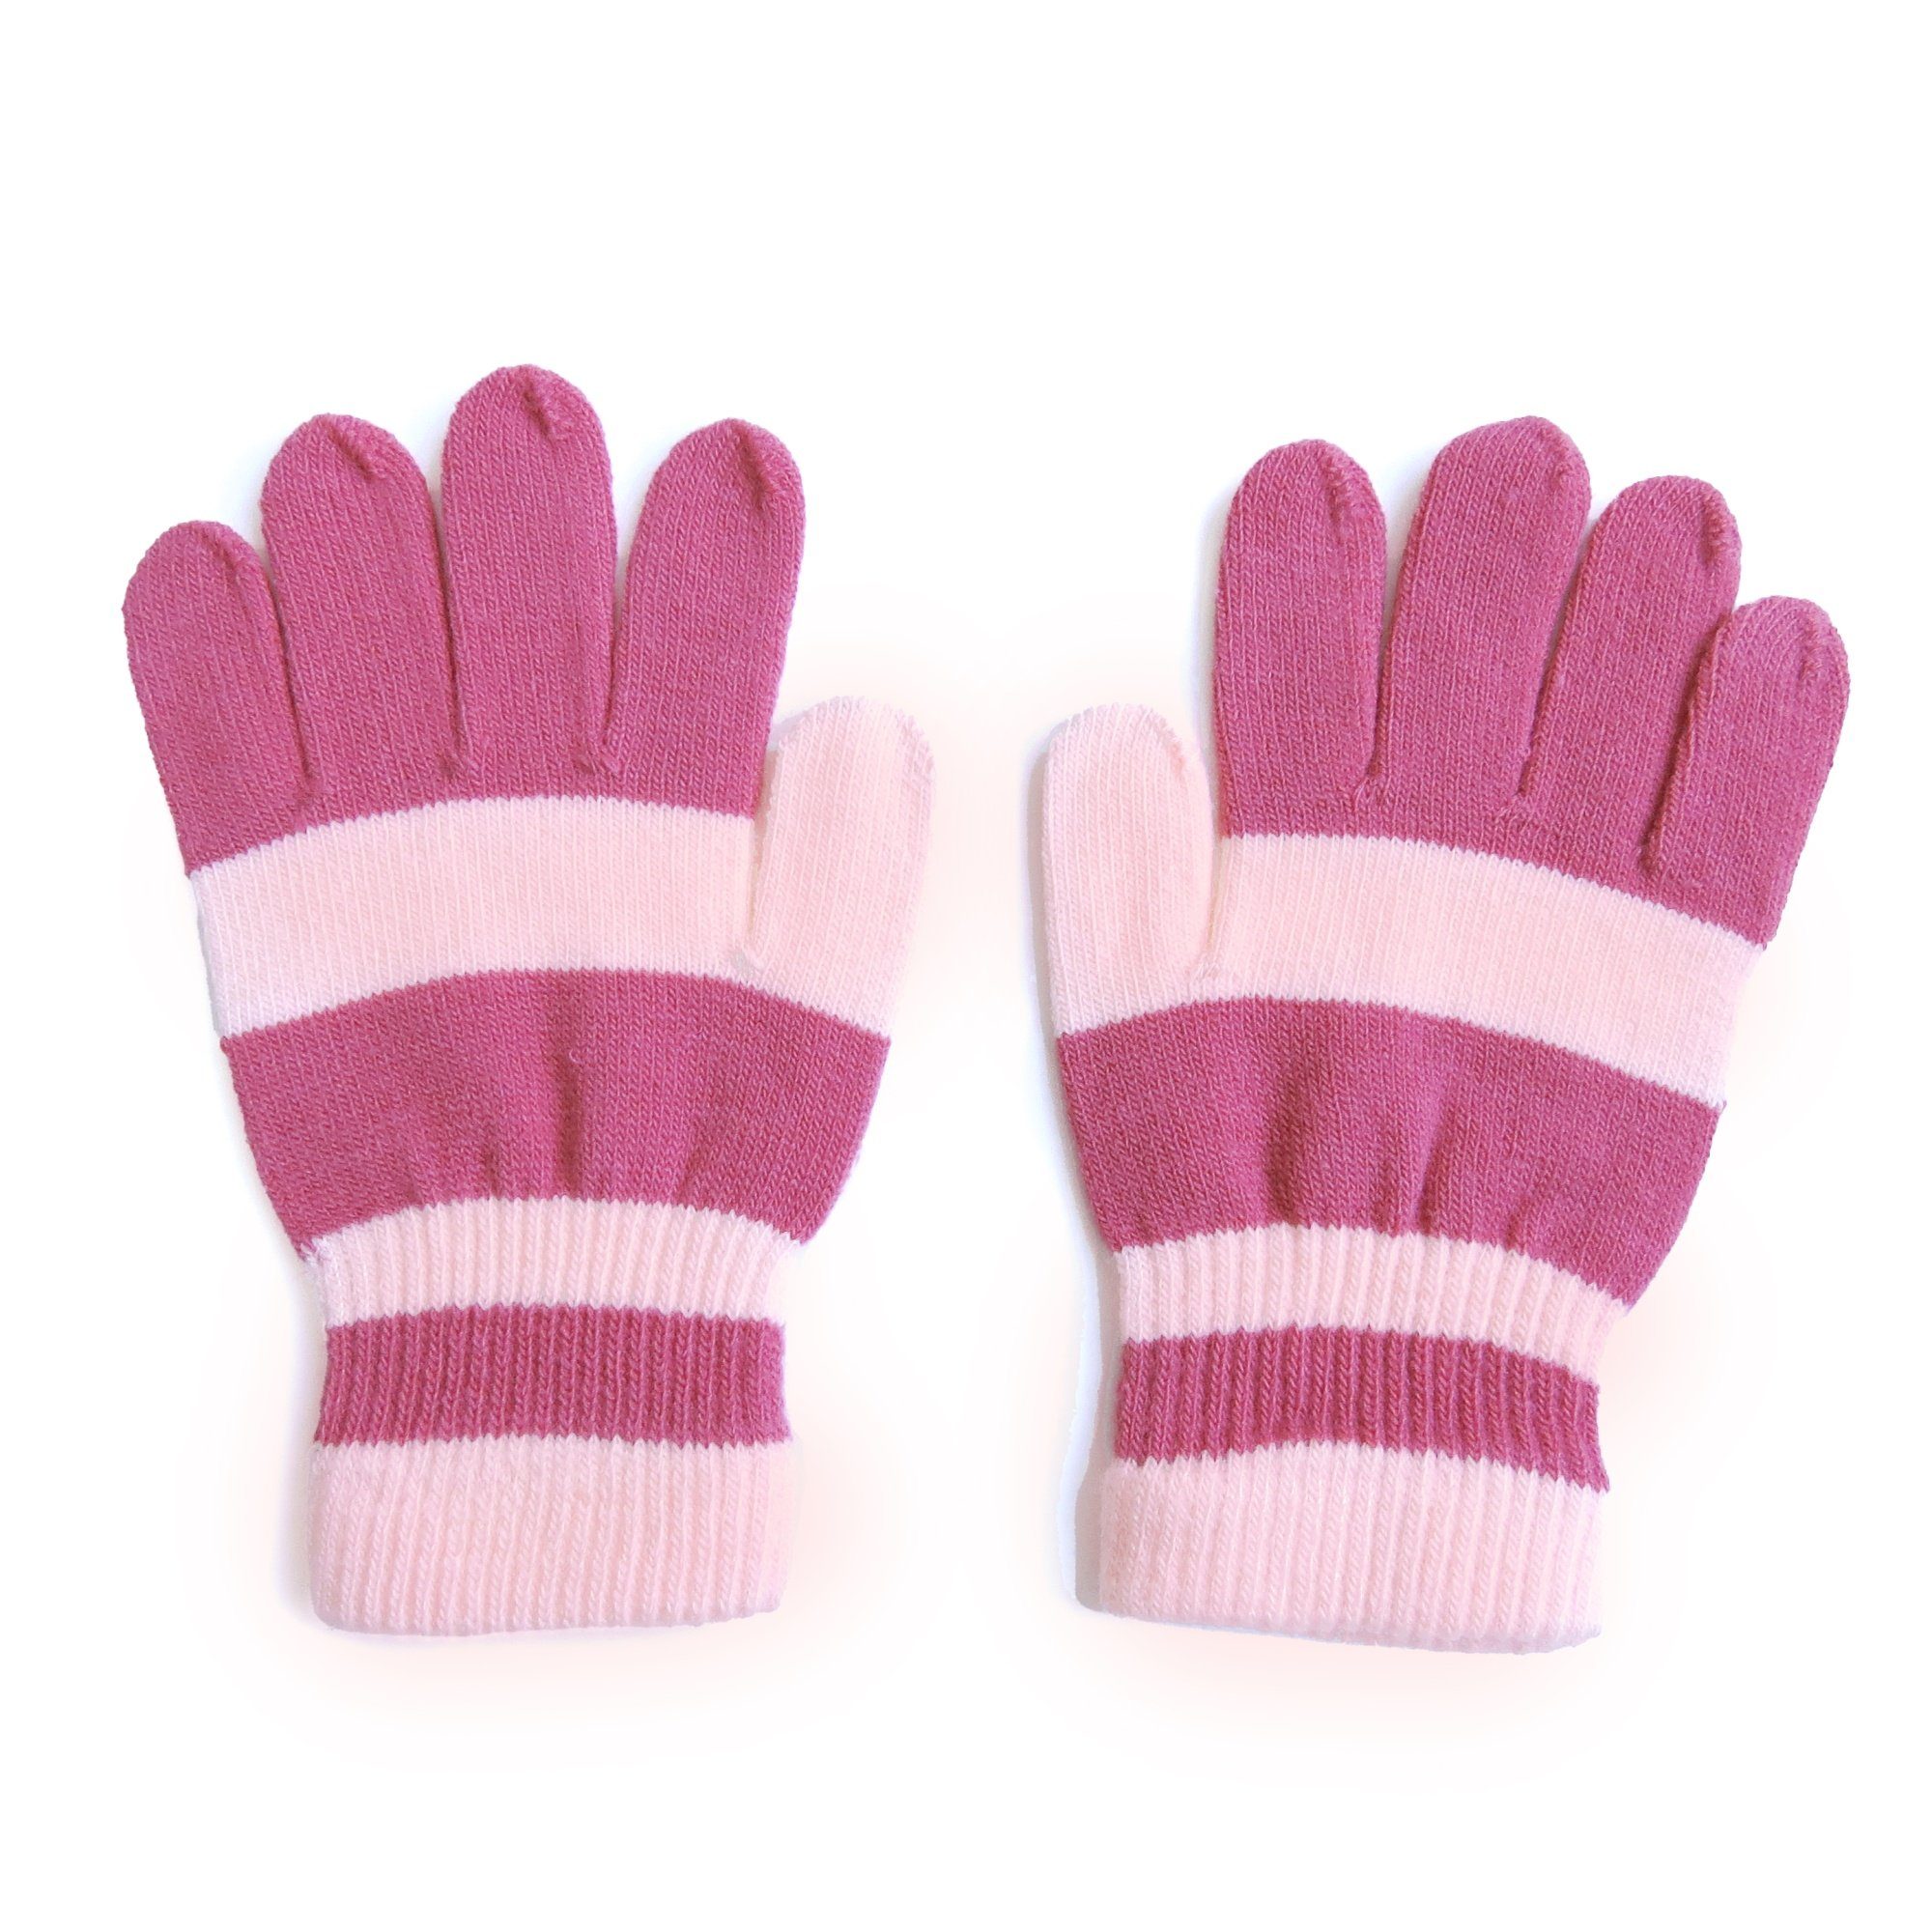 Sonia Originelli Strickhandschuhe Kinderhandschuhe gestreift pink Onesize Farben können abweichen